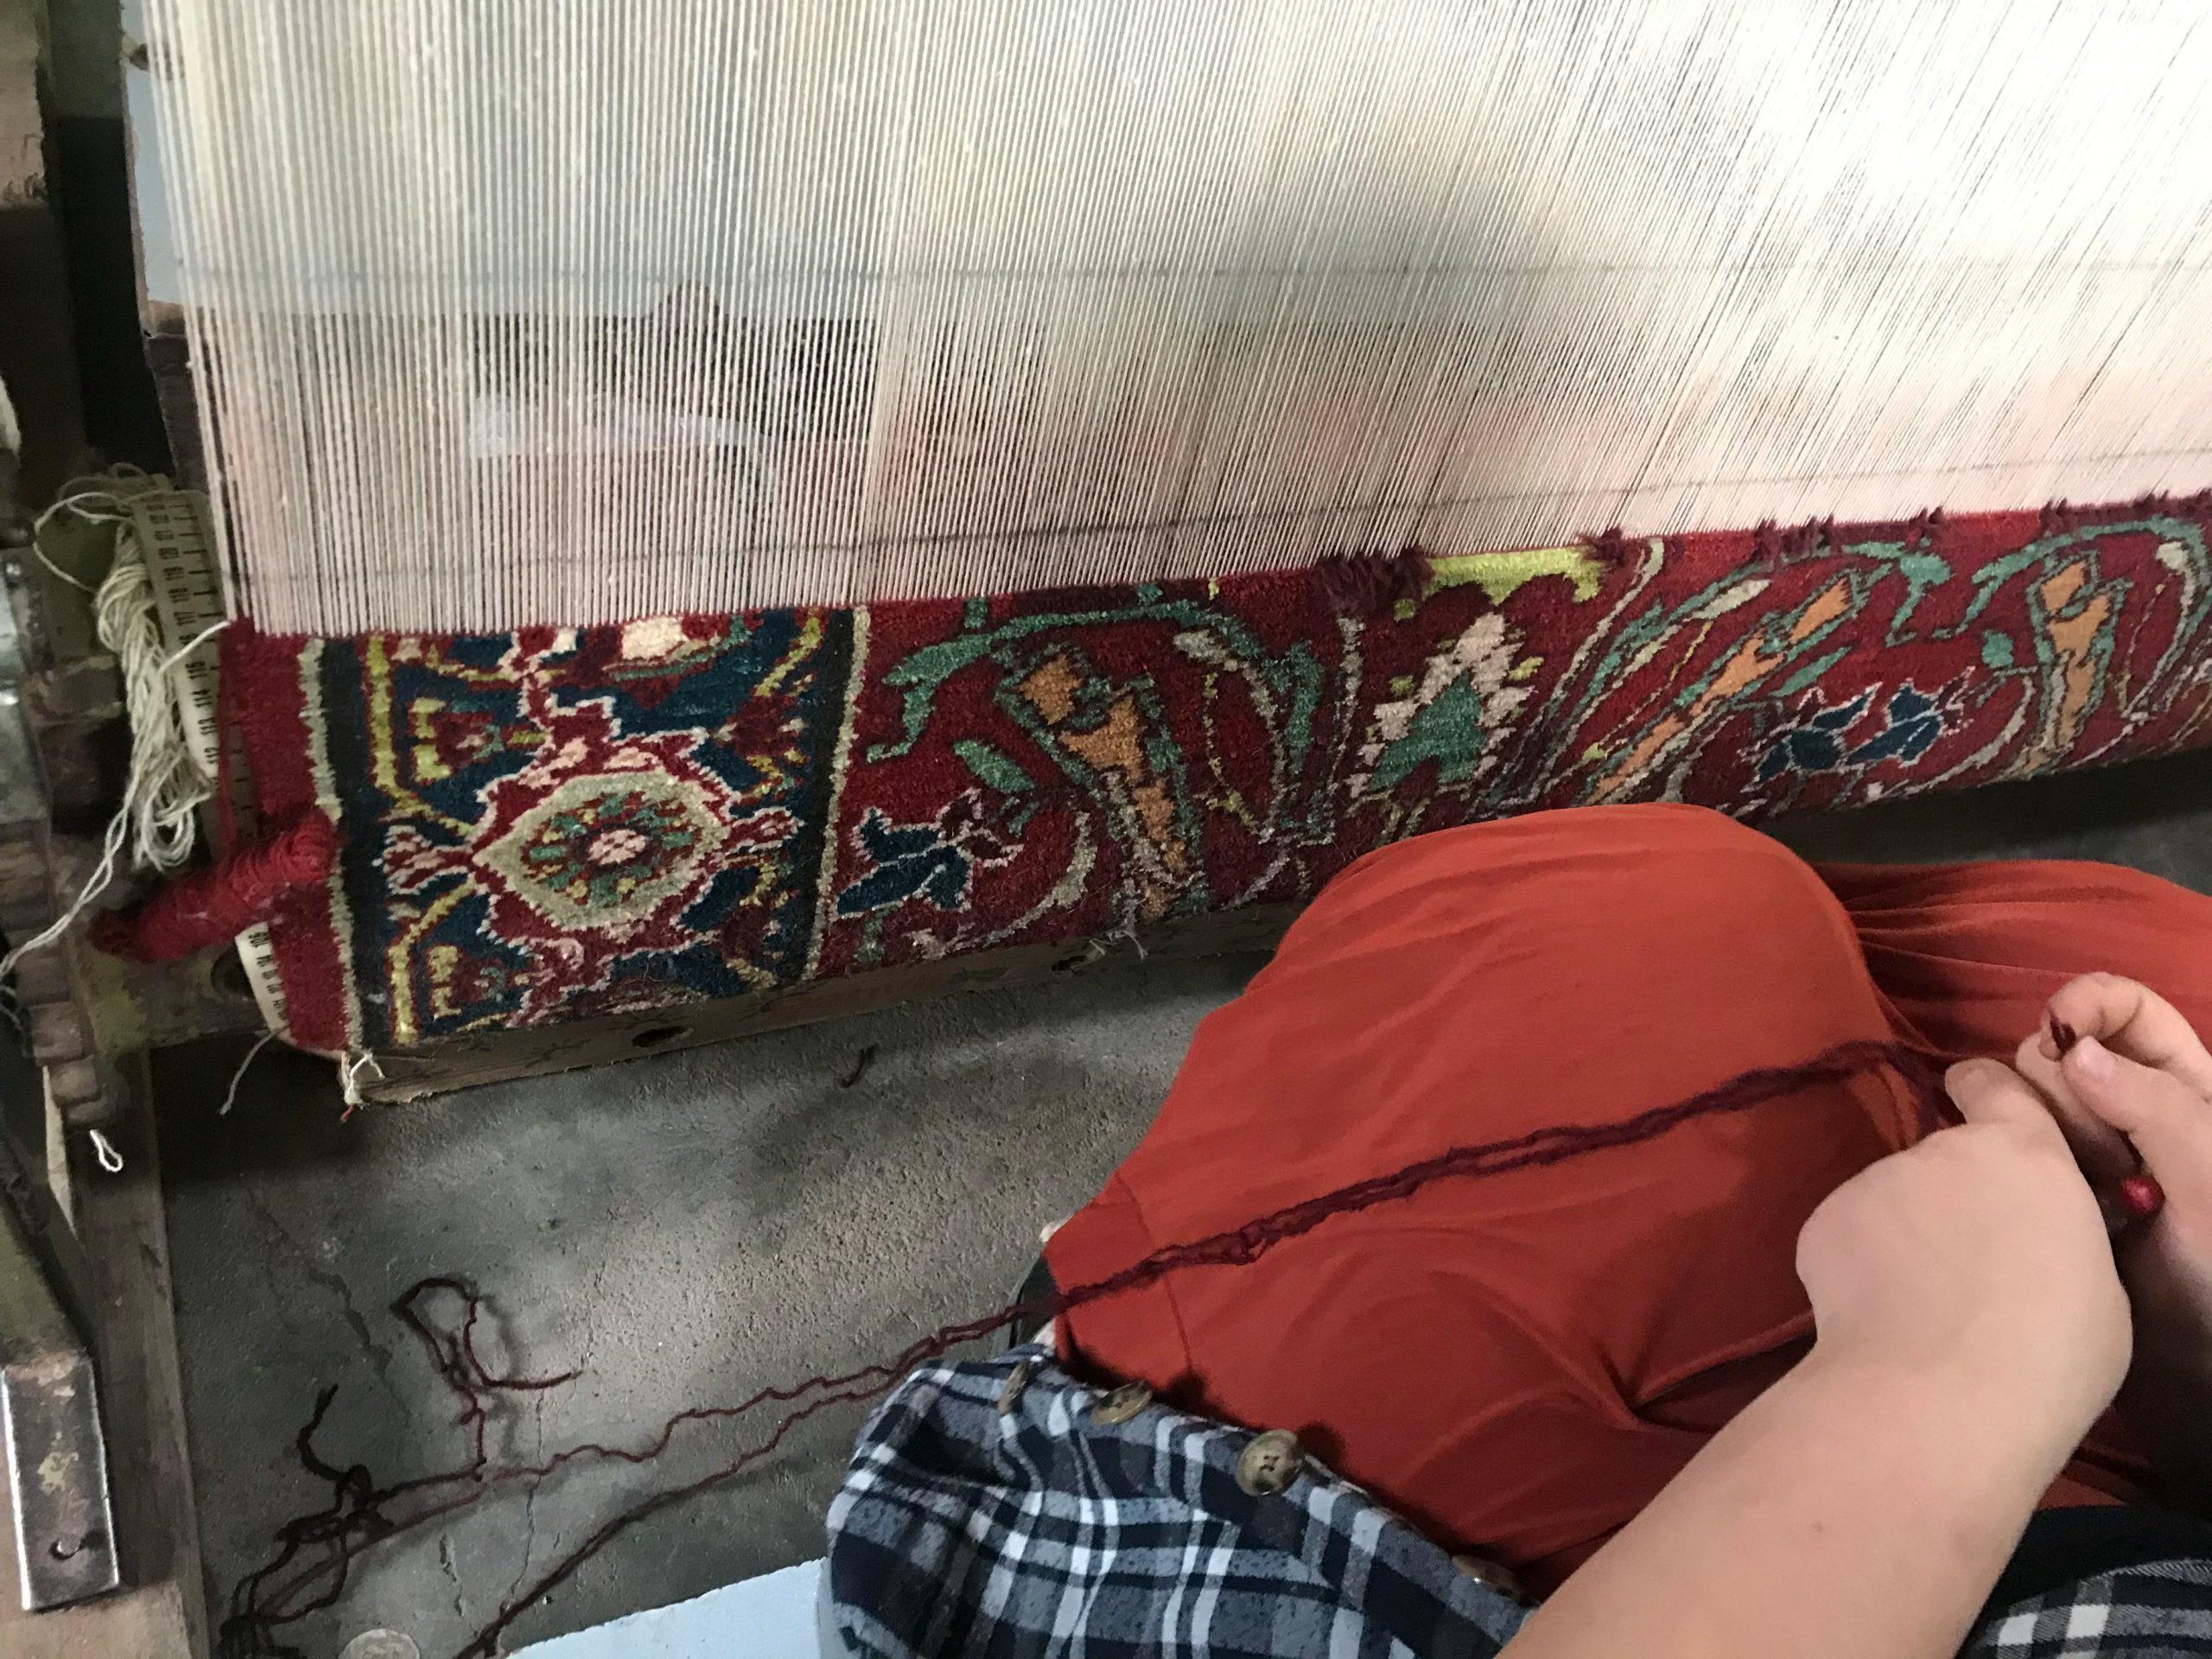 Turkish Ararat Rugs Bidjar Sweeping Arabesques Rug Persian Revival Carpet Natural Dyed For Sale